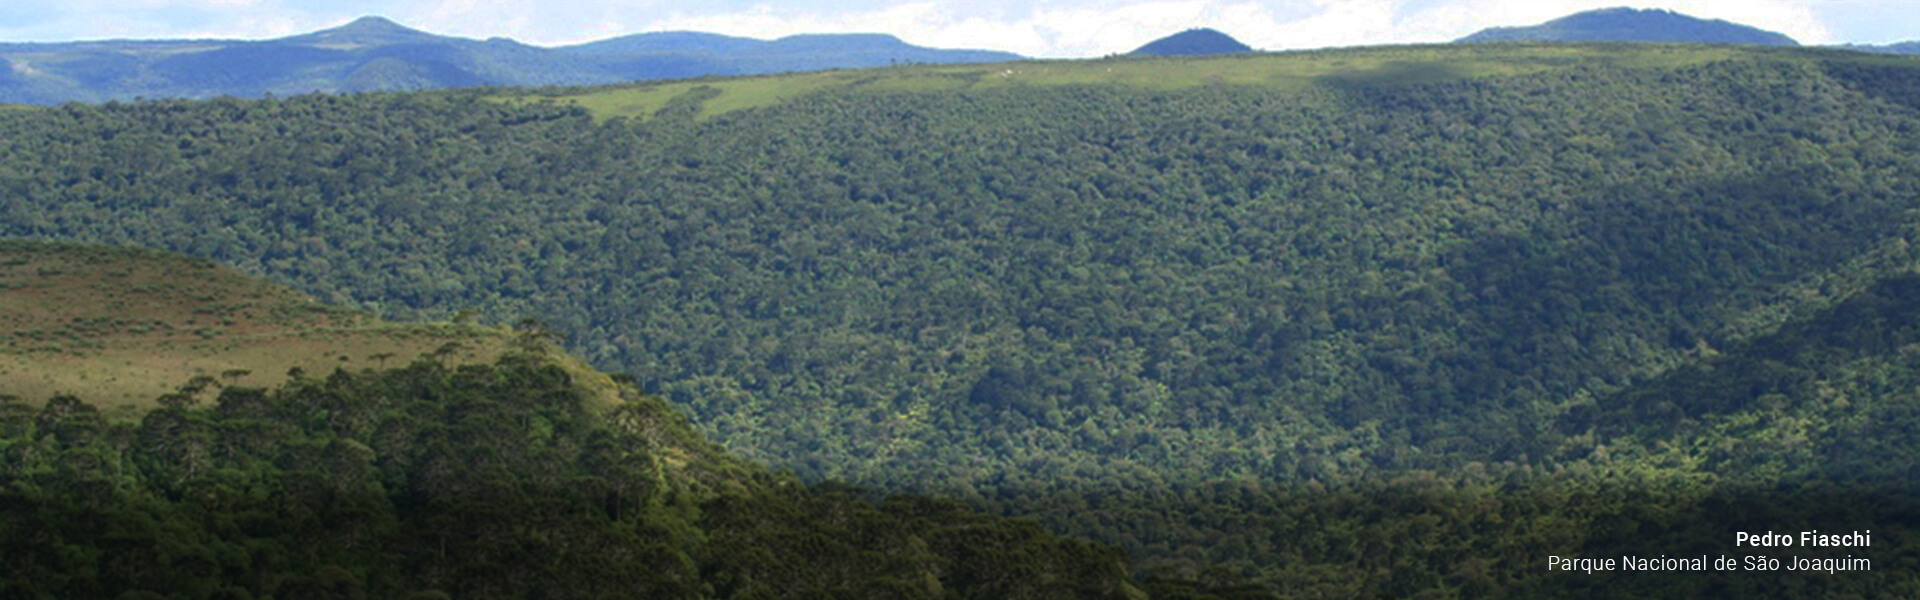 Parque Nacional de São Joaquim